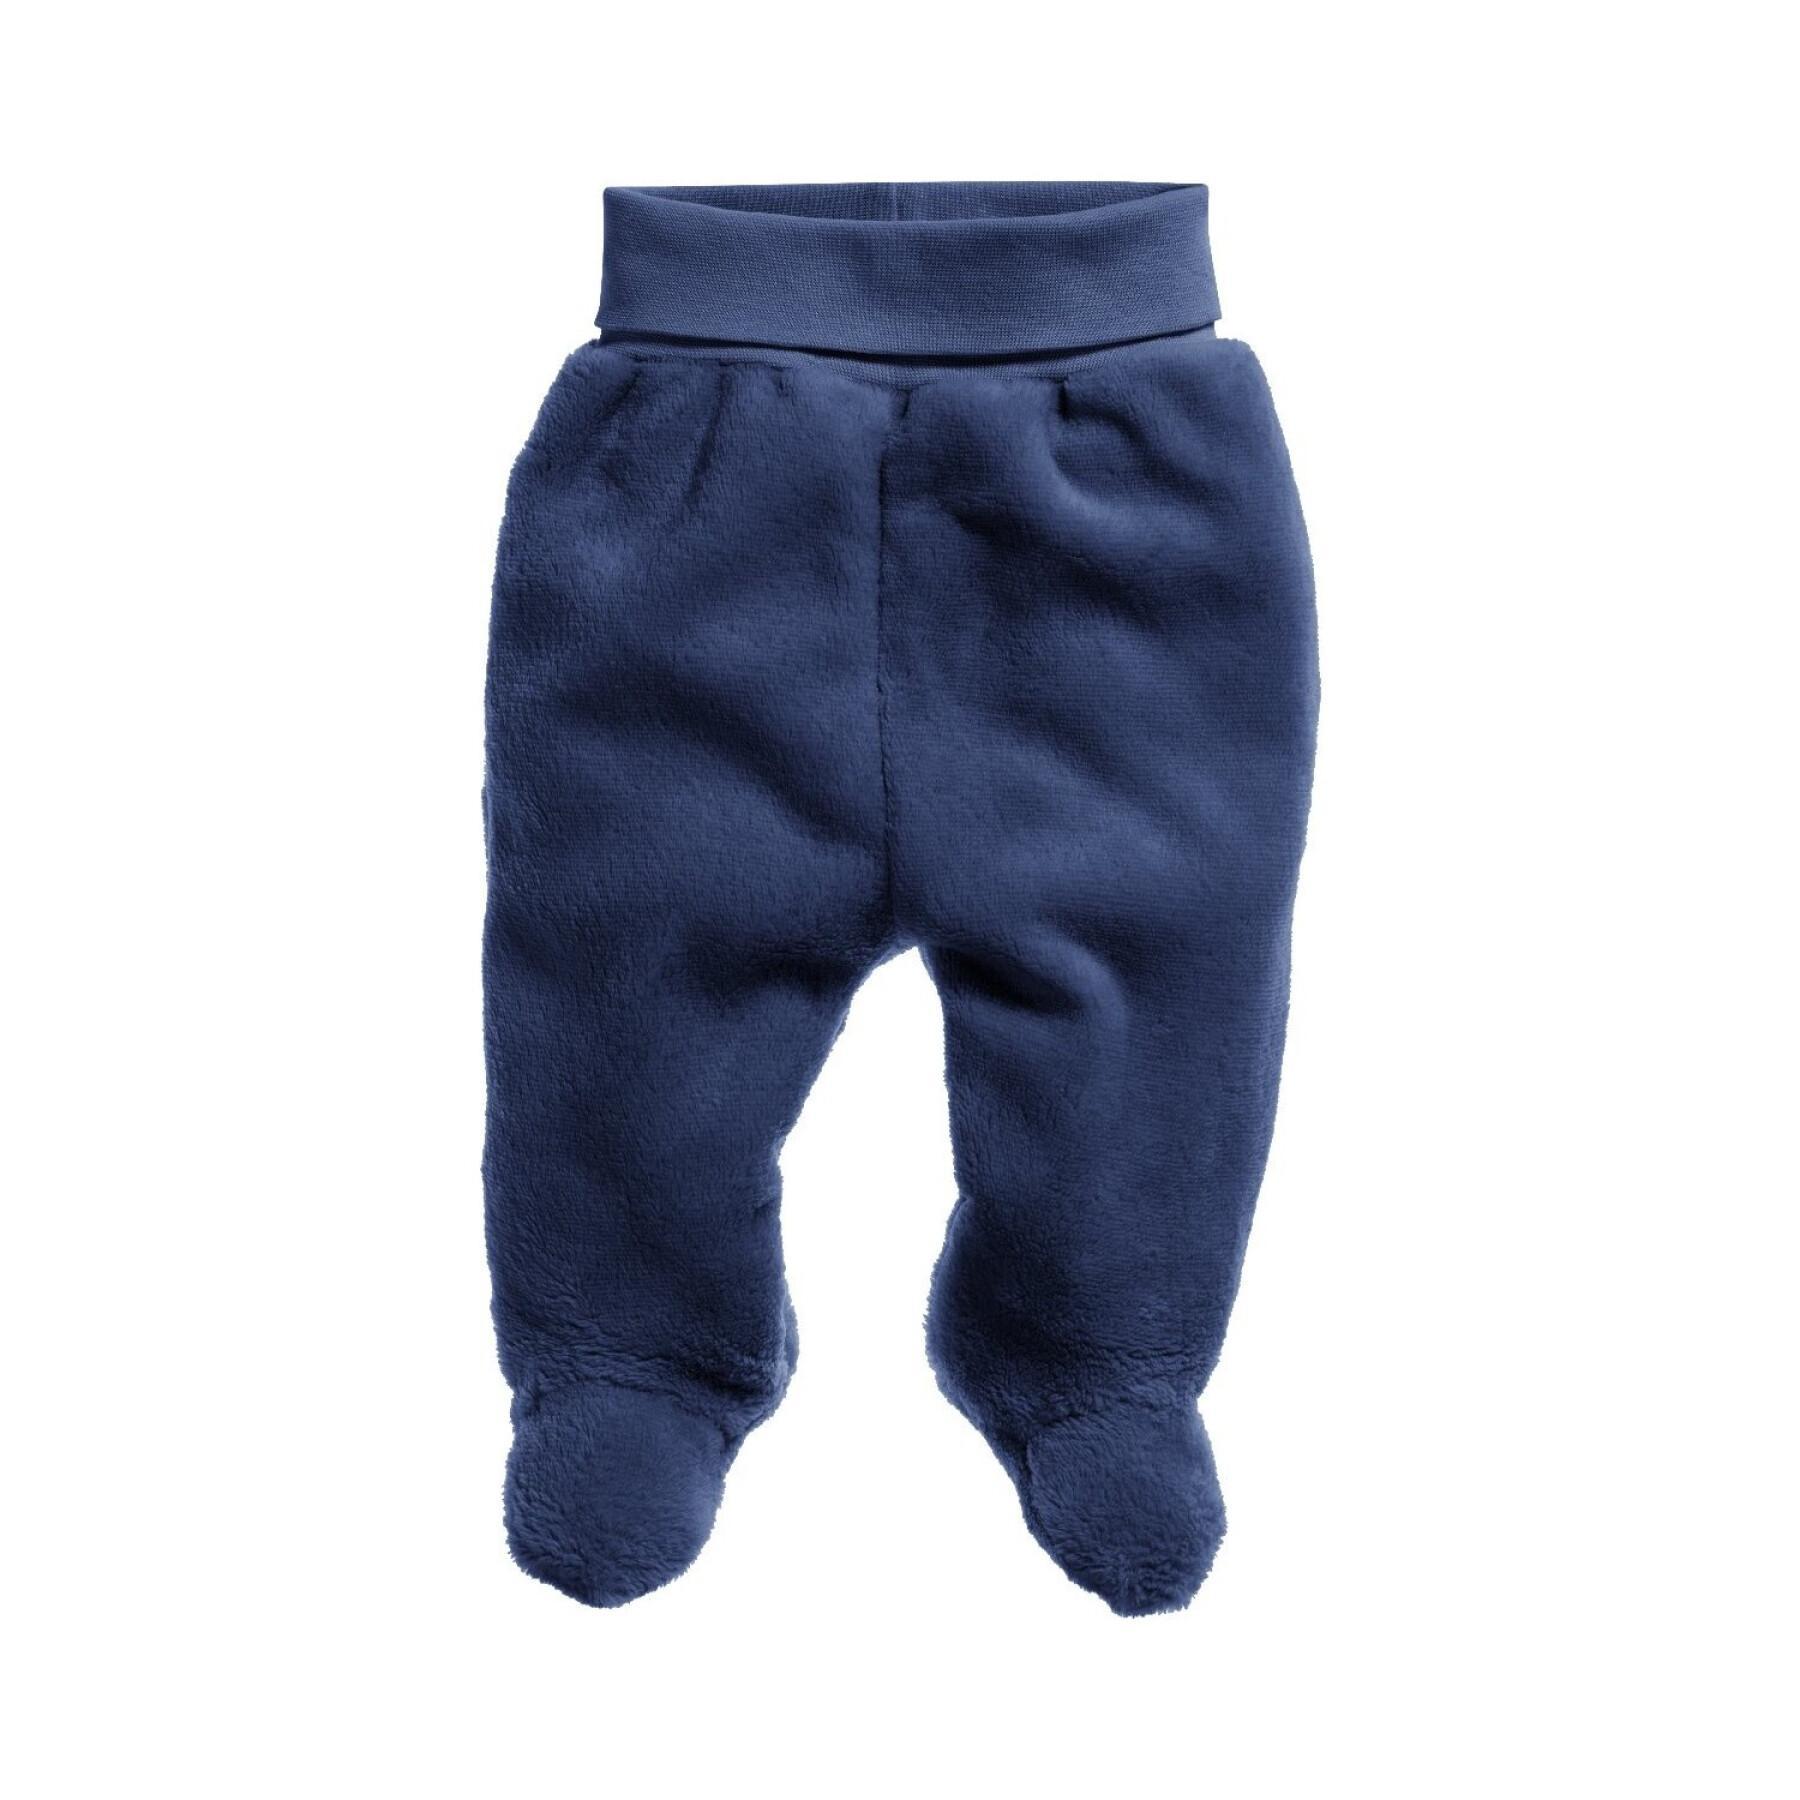 Cozy fleece pants for big babies Playshoes